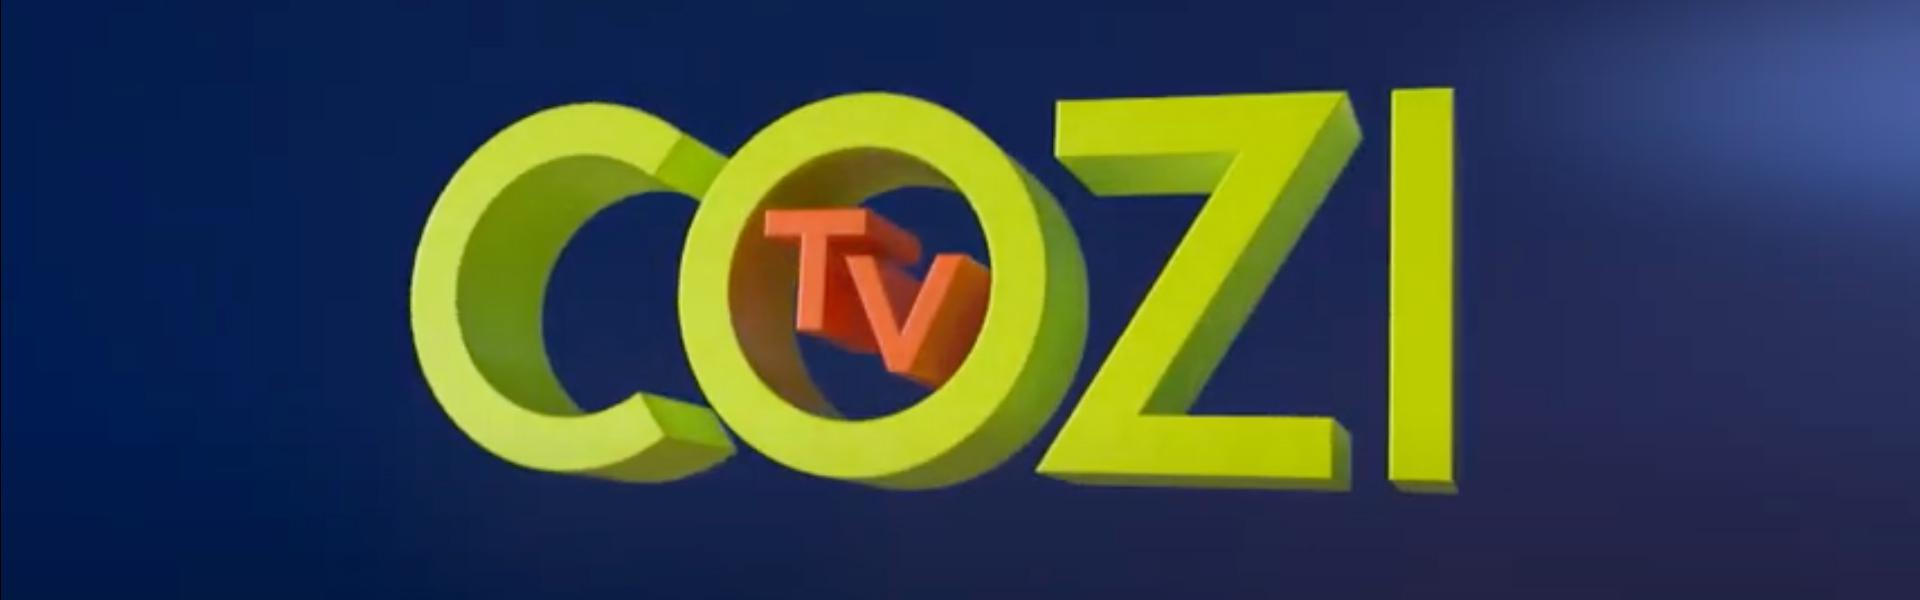 Is Cozi Tv on Spectrum